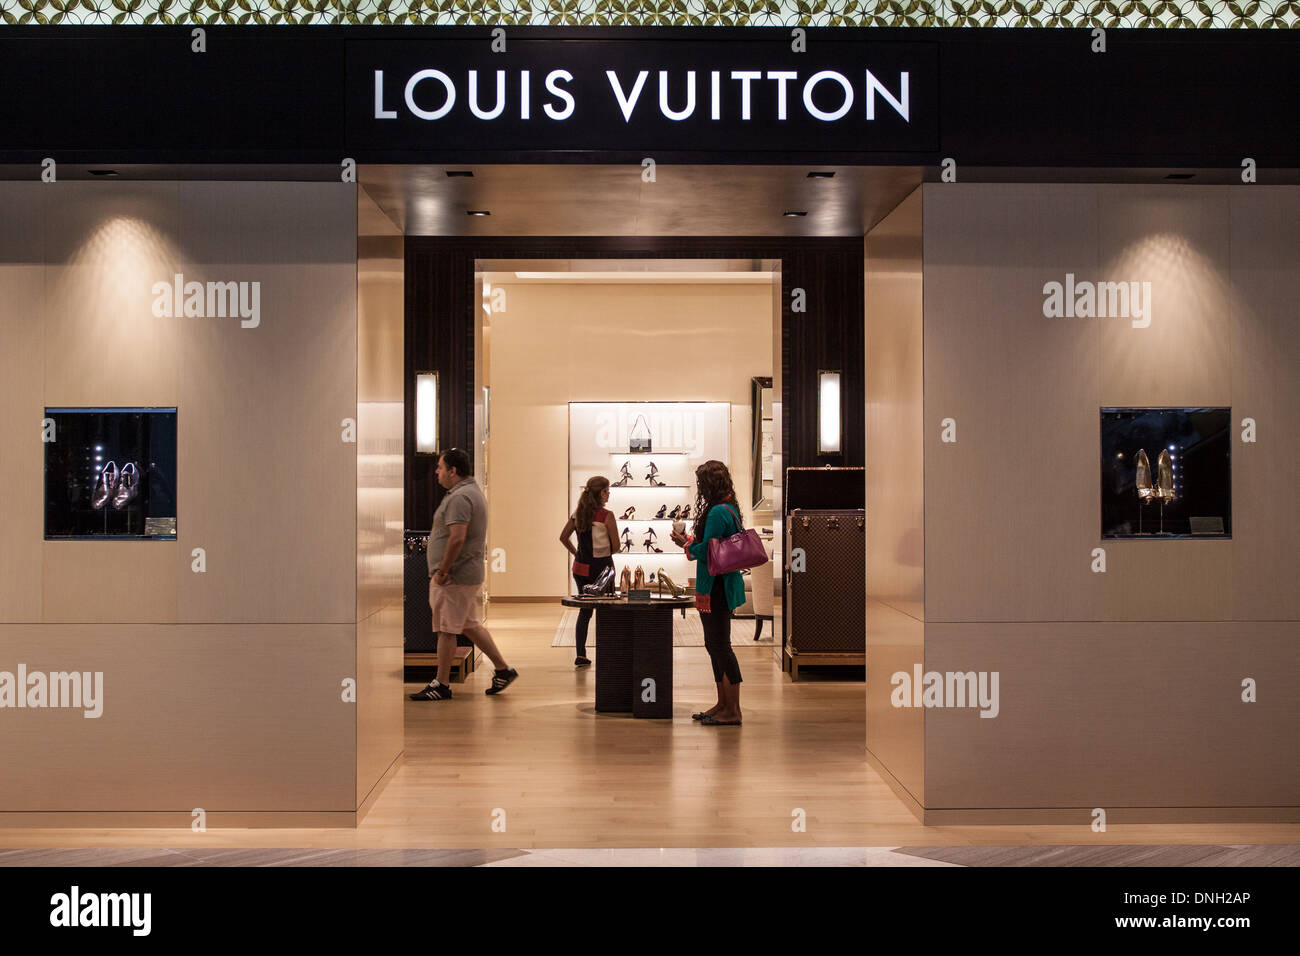 Les acheteurs de SHOPPING DE LA LOUIS VUITTON BOUTIQUE DANS LE CENTRE COMMERCIAL Dubai Mall, le centre-ville de Dubai, DUBAÏ, ÉMIRATS ARABES UNIS, MOYEN ORIENT Banque D'Images